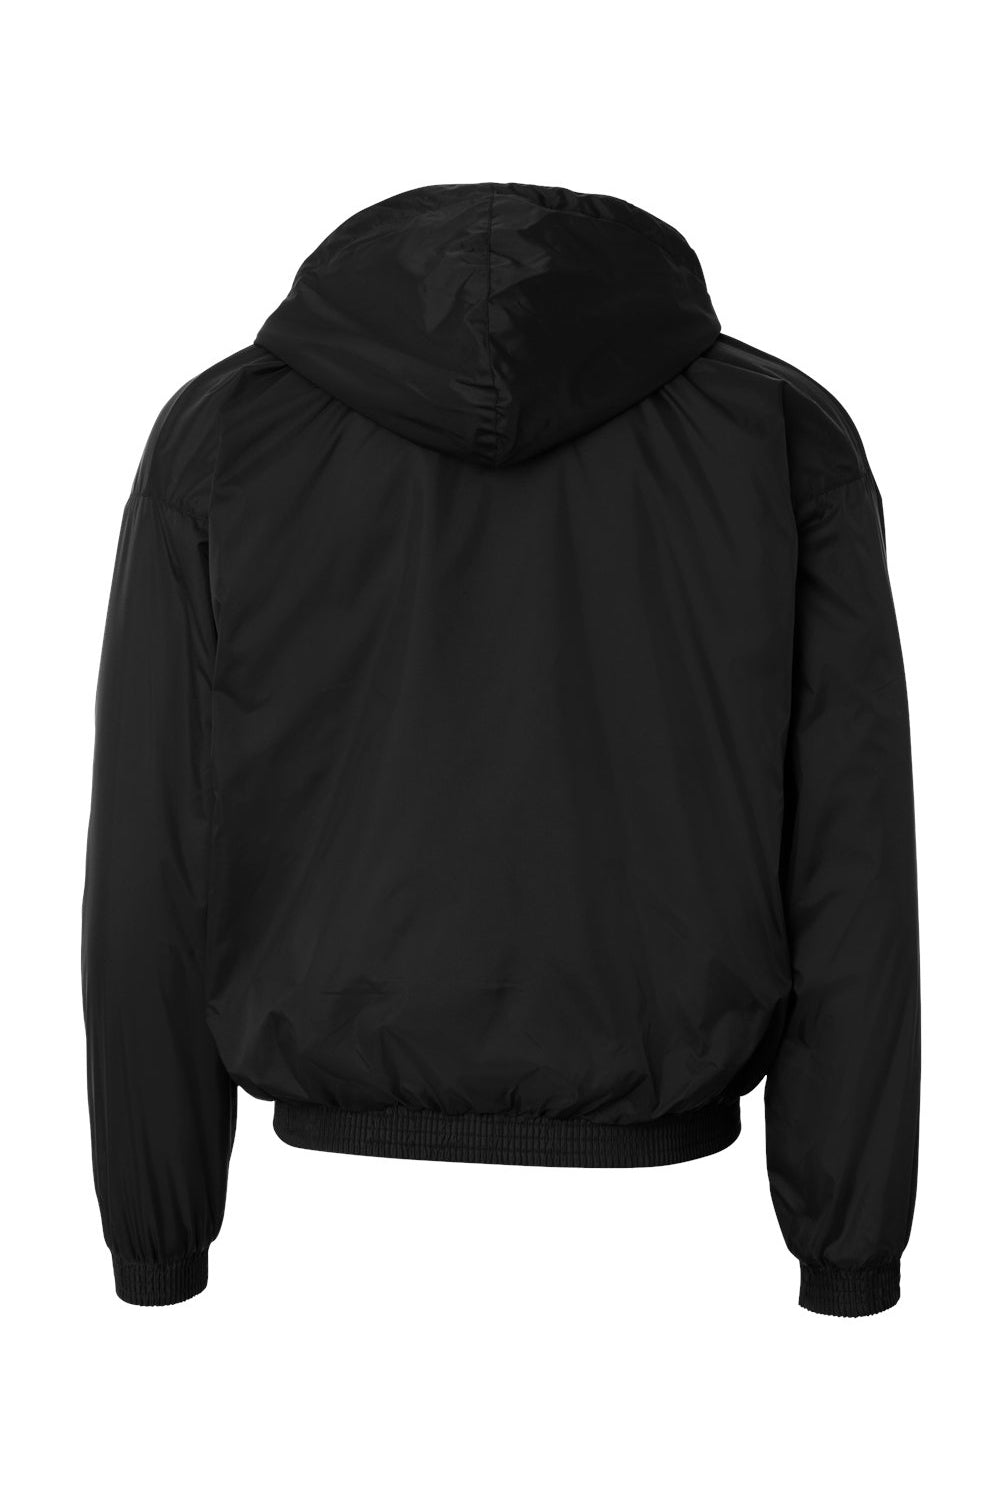 Augusta Sportswear 3280 Mens Full Zip Hooded Jacket Black Flat Back